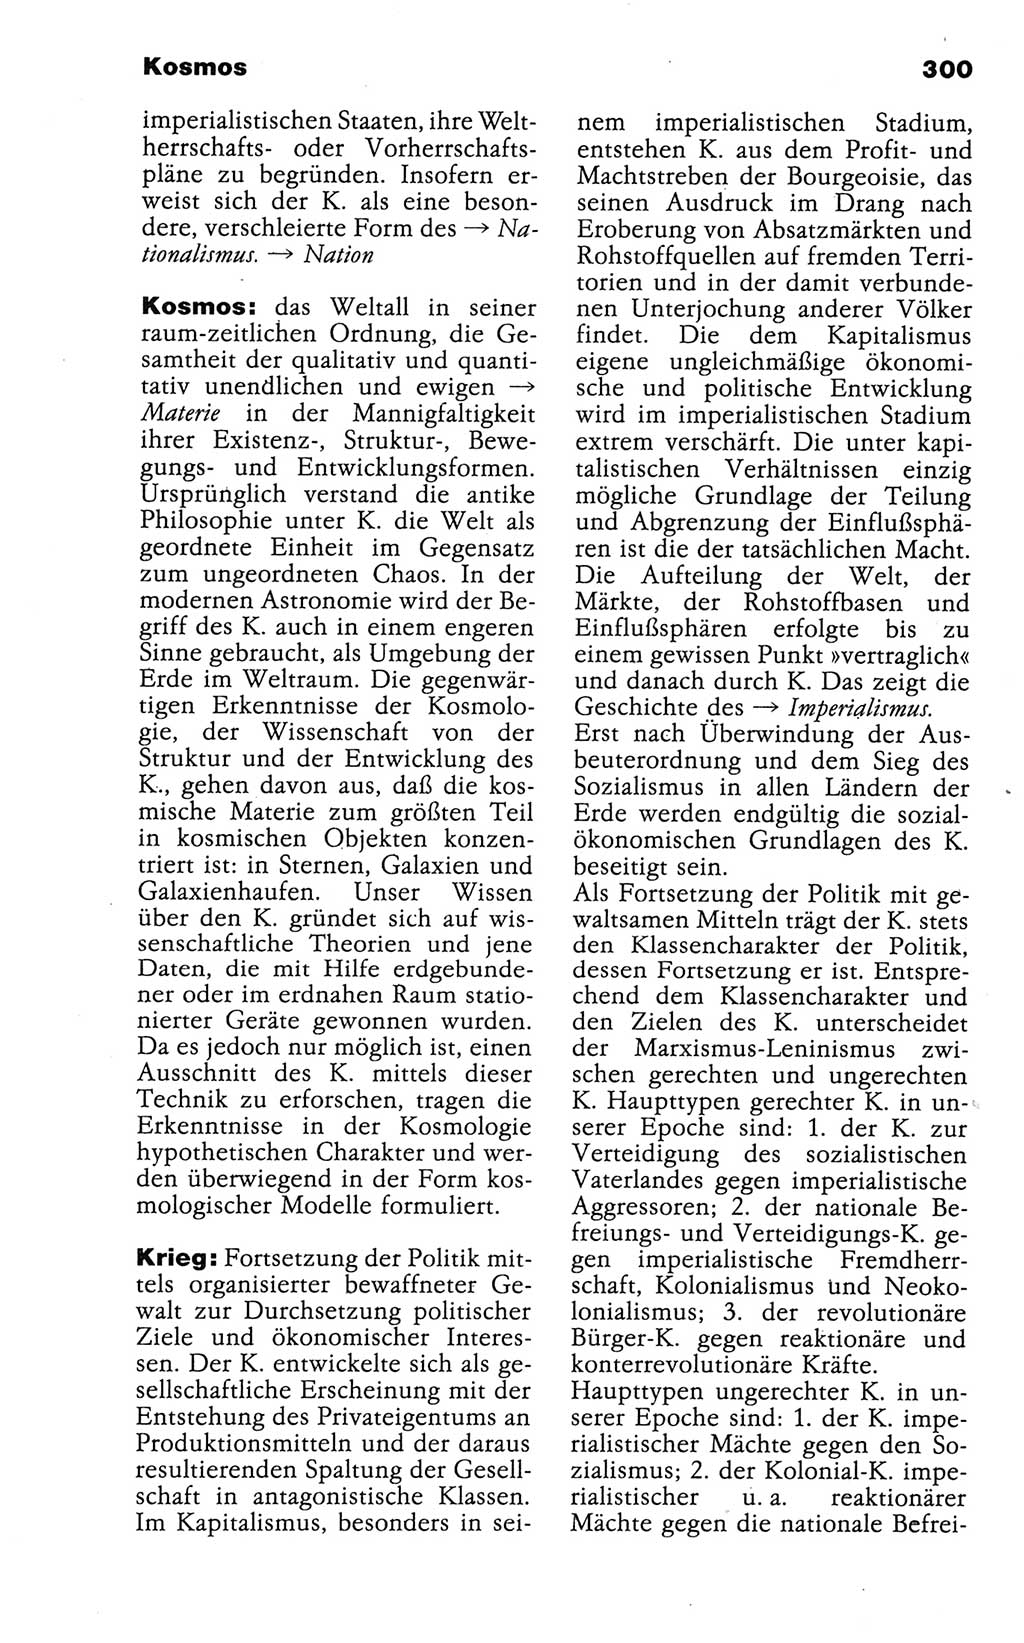 Wörterbuch der marxistisch-leninistischen Philosophie [Deutsche Demokratische Republik (DDR)] 1986, Seite 300 (Wb. ML Phil. DDR 1986, S. 300)